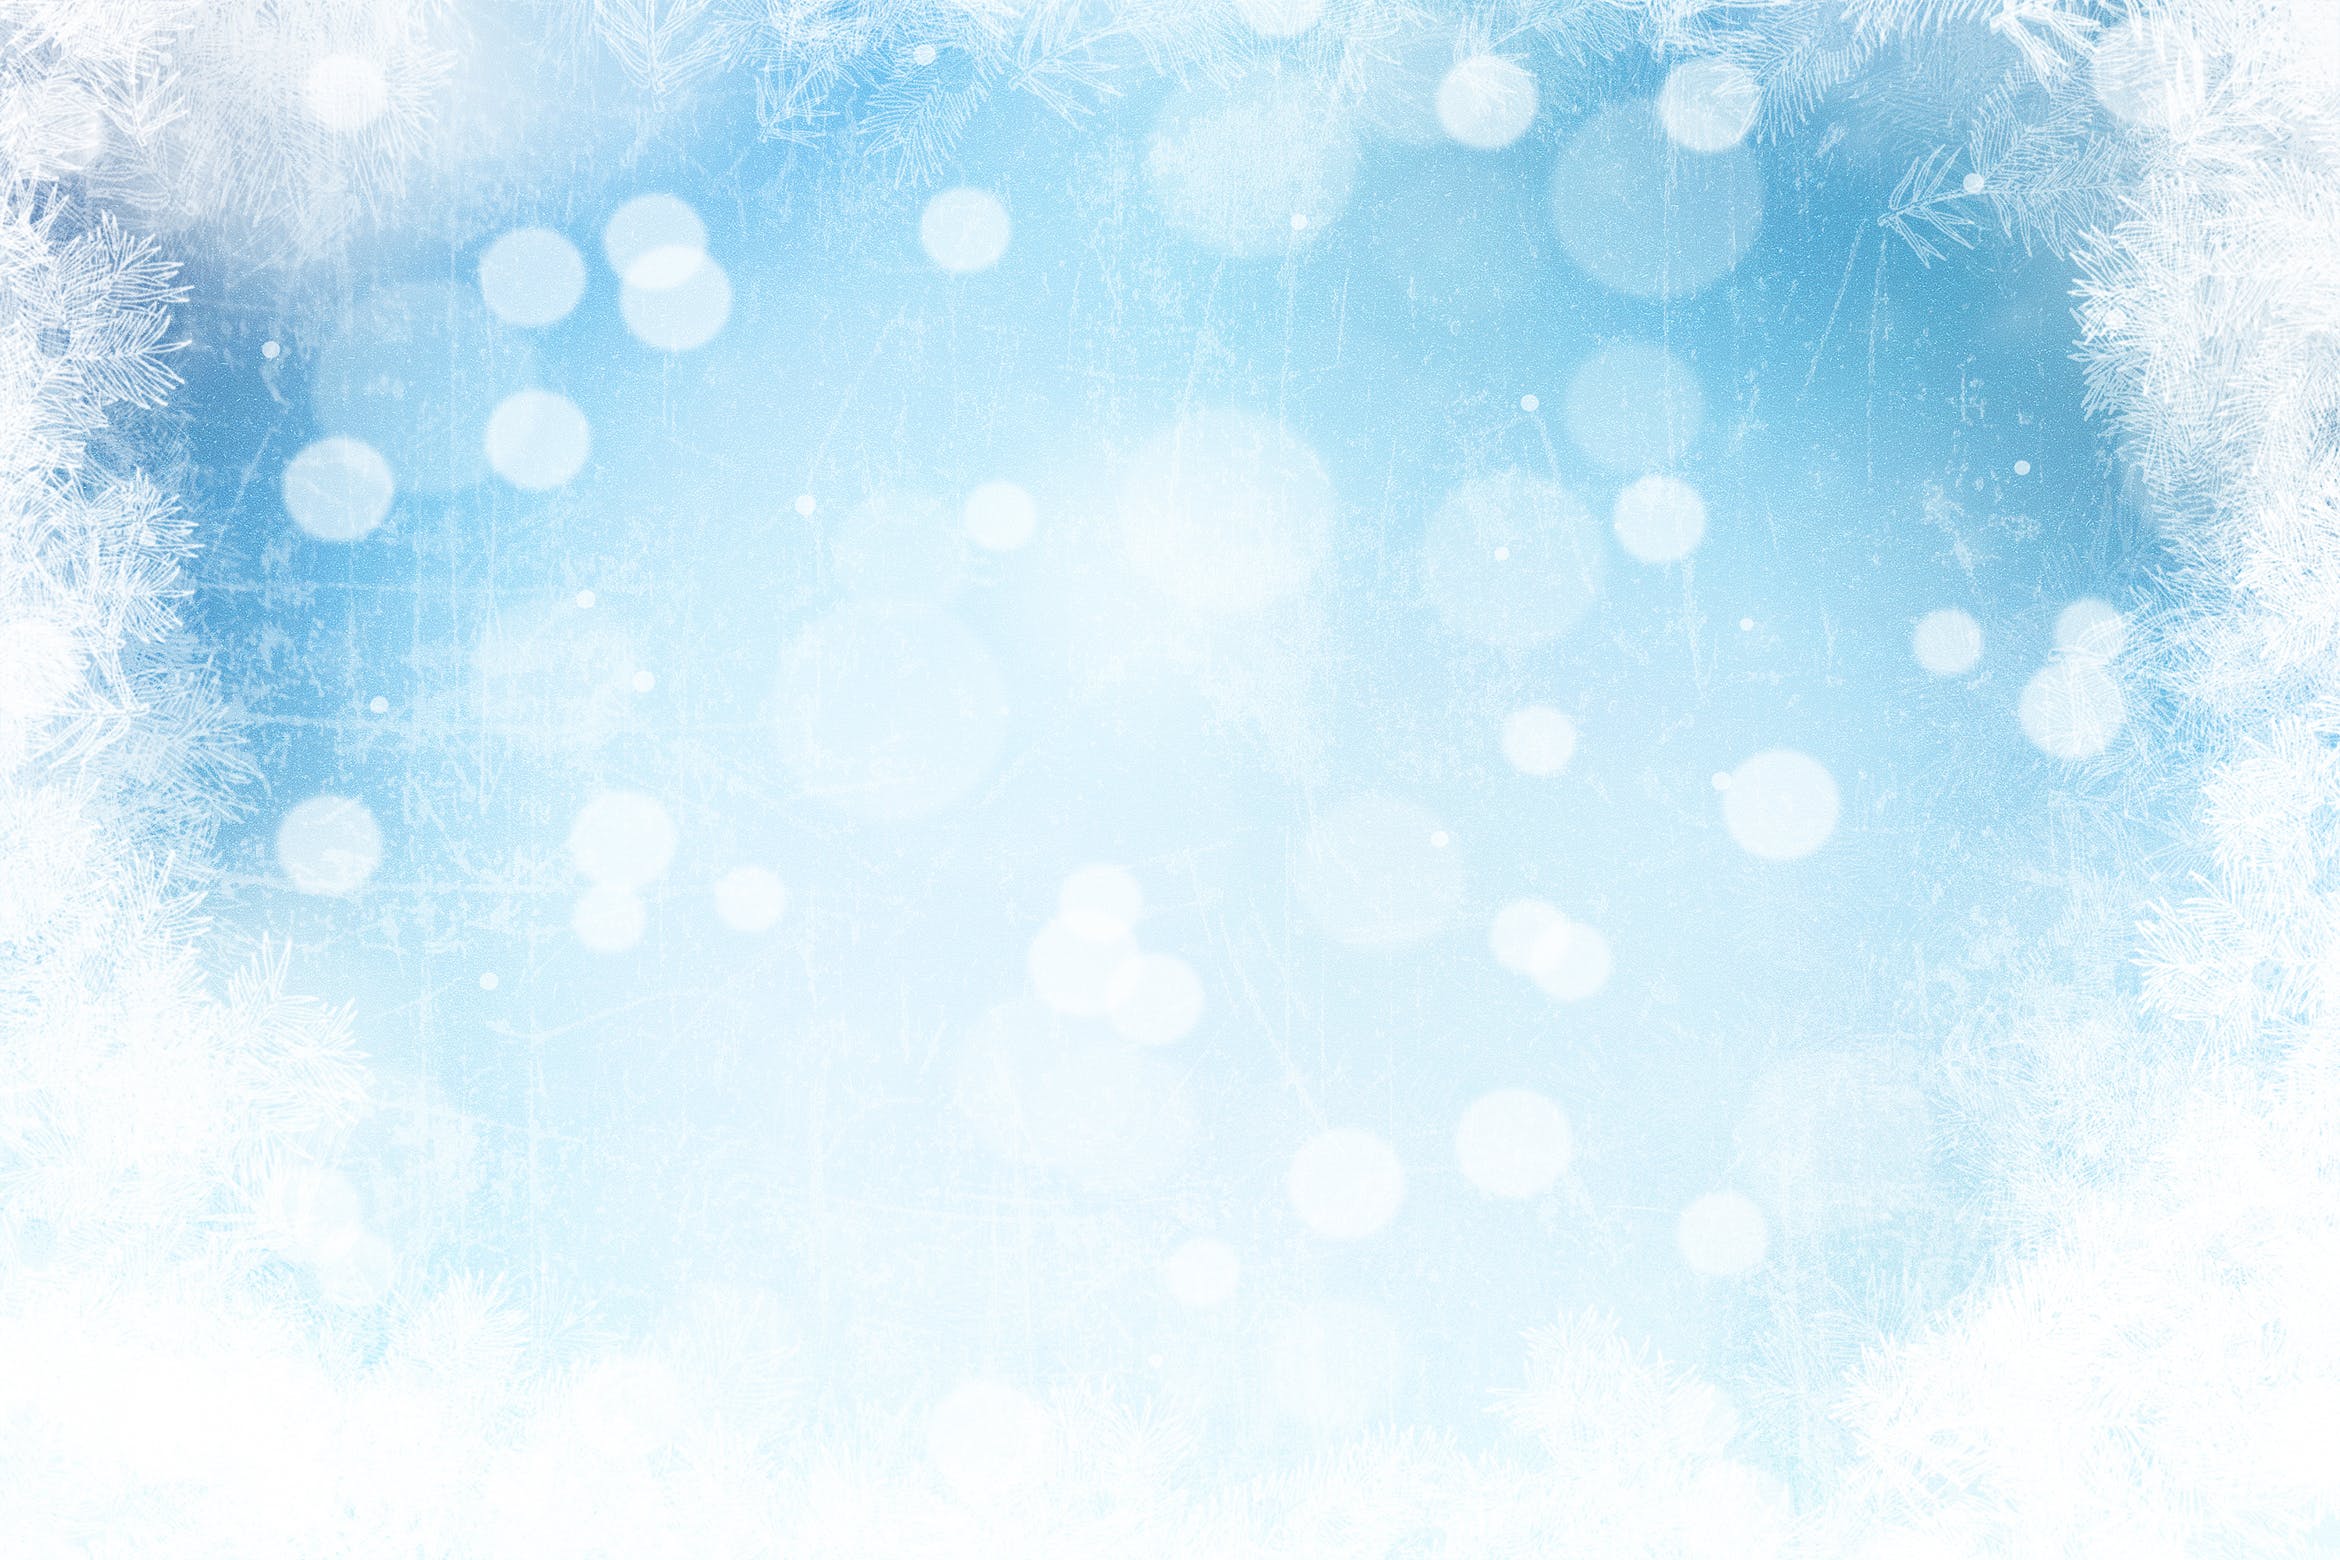 冰霜风格圣诞节背景图素材 Frosty christmas bokeh background插图